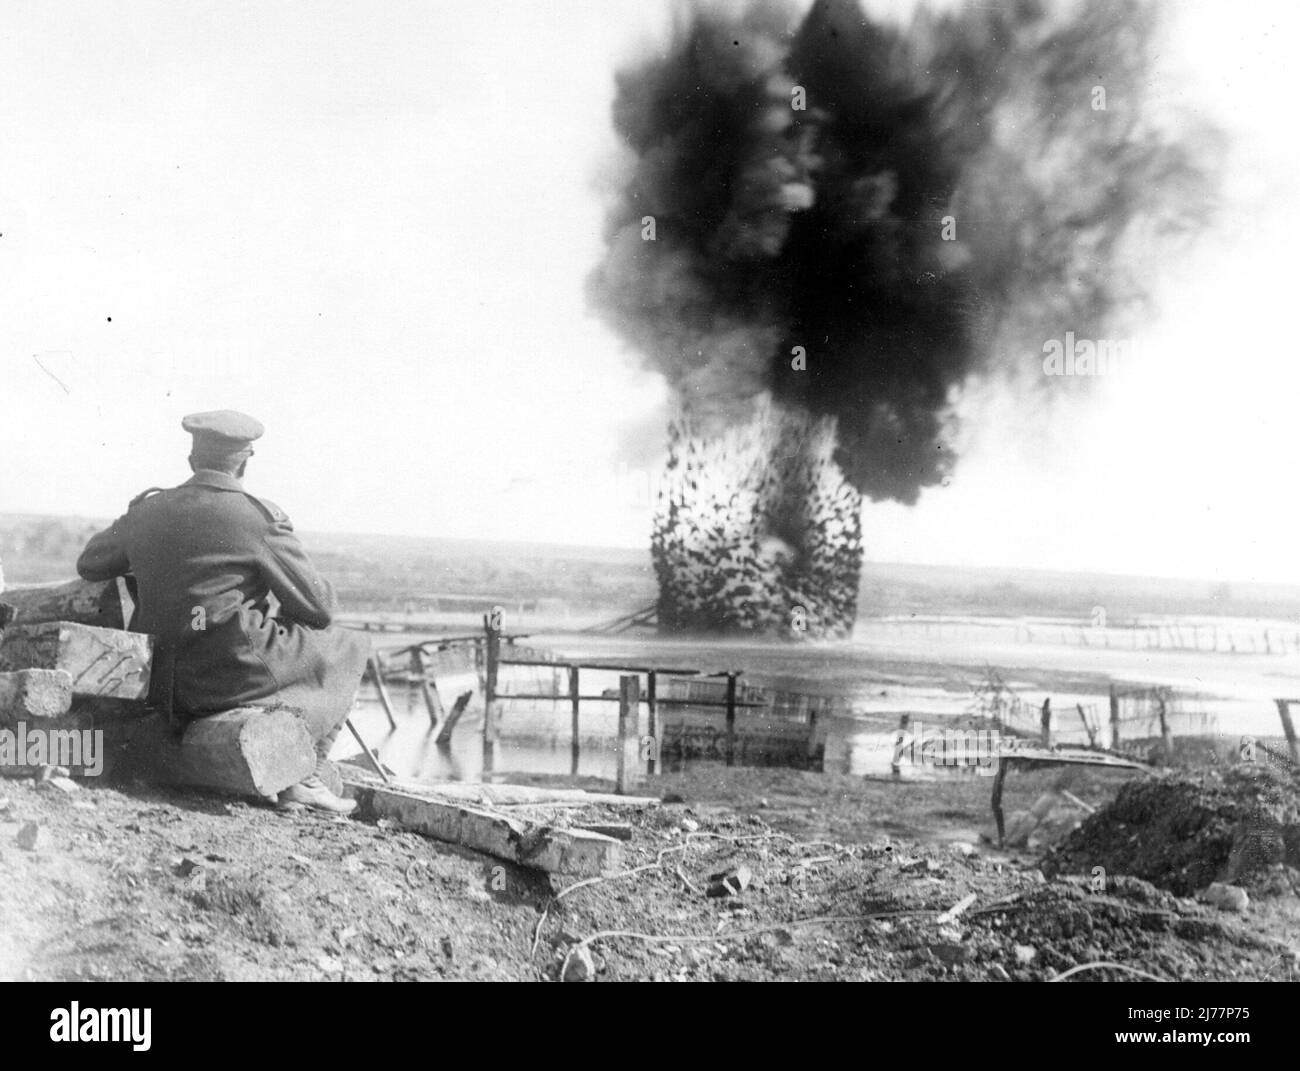 Una explosión que tiene lugar en el Somme. Según la leyenda existente, es una explosión controlada establecida por los Ingenieros Reales, para despejar el camino para el avance. Foto de stock